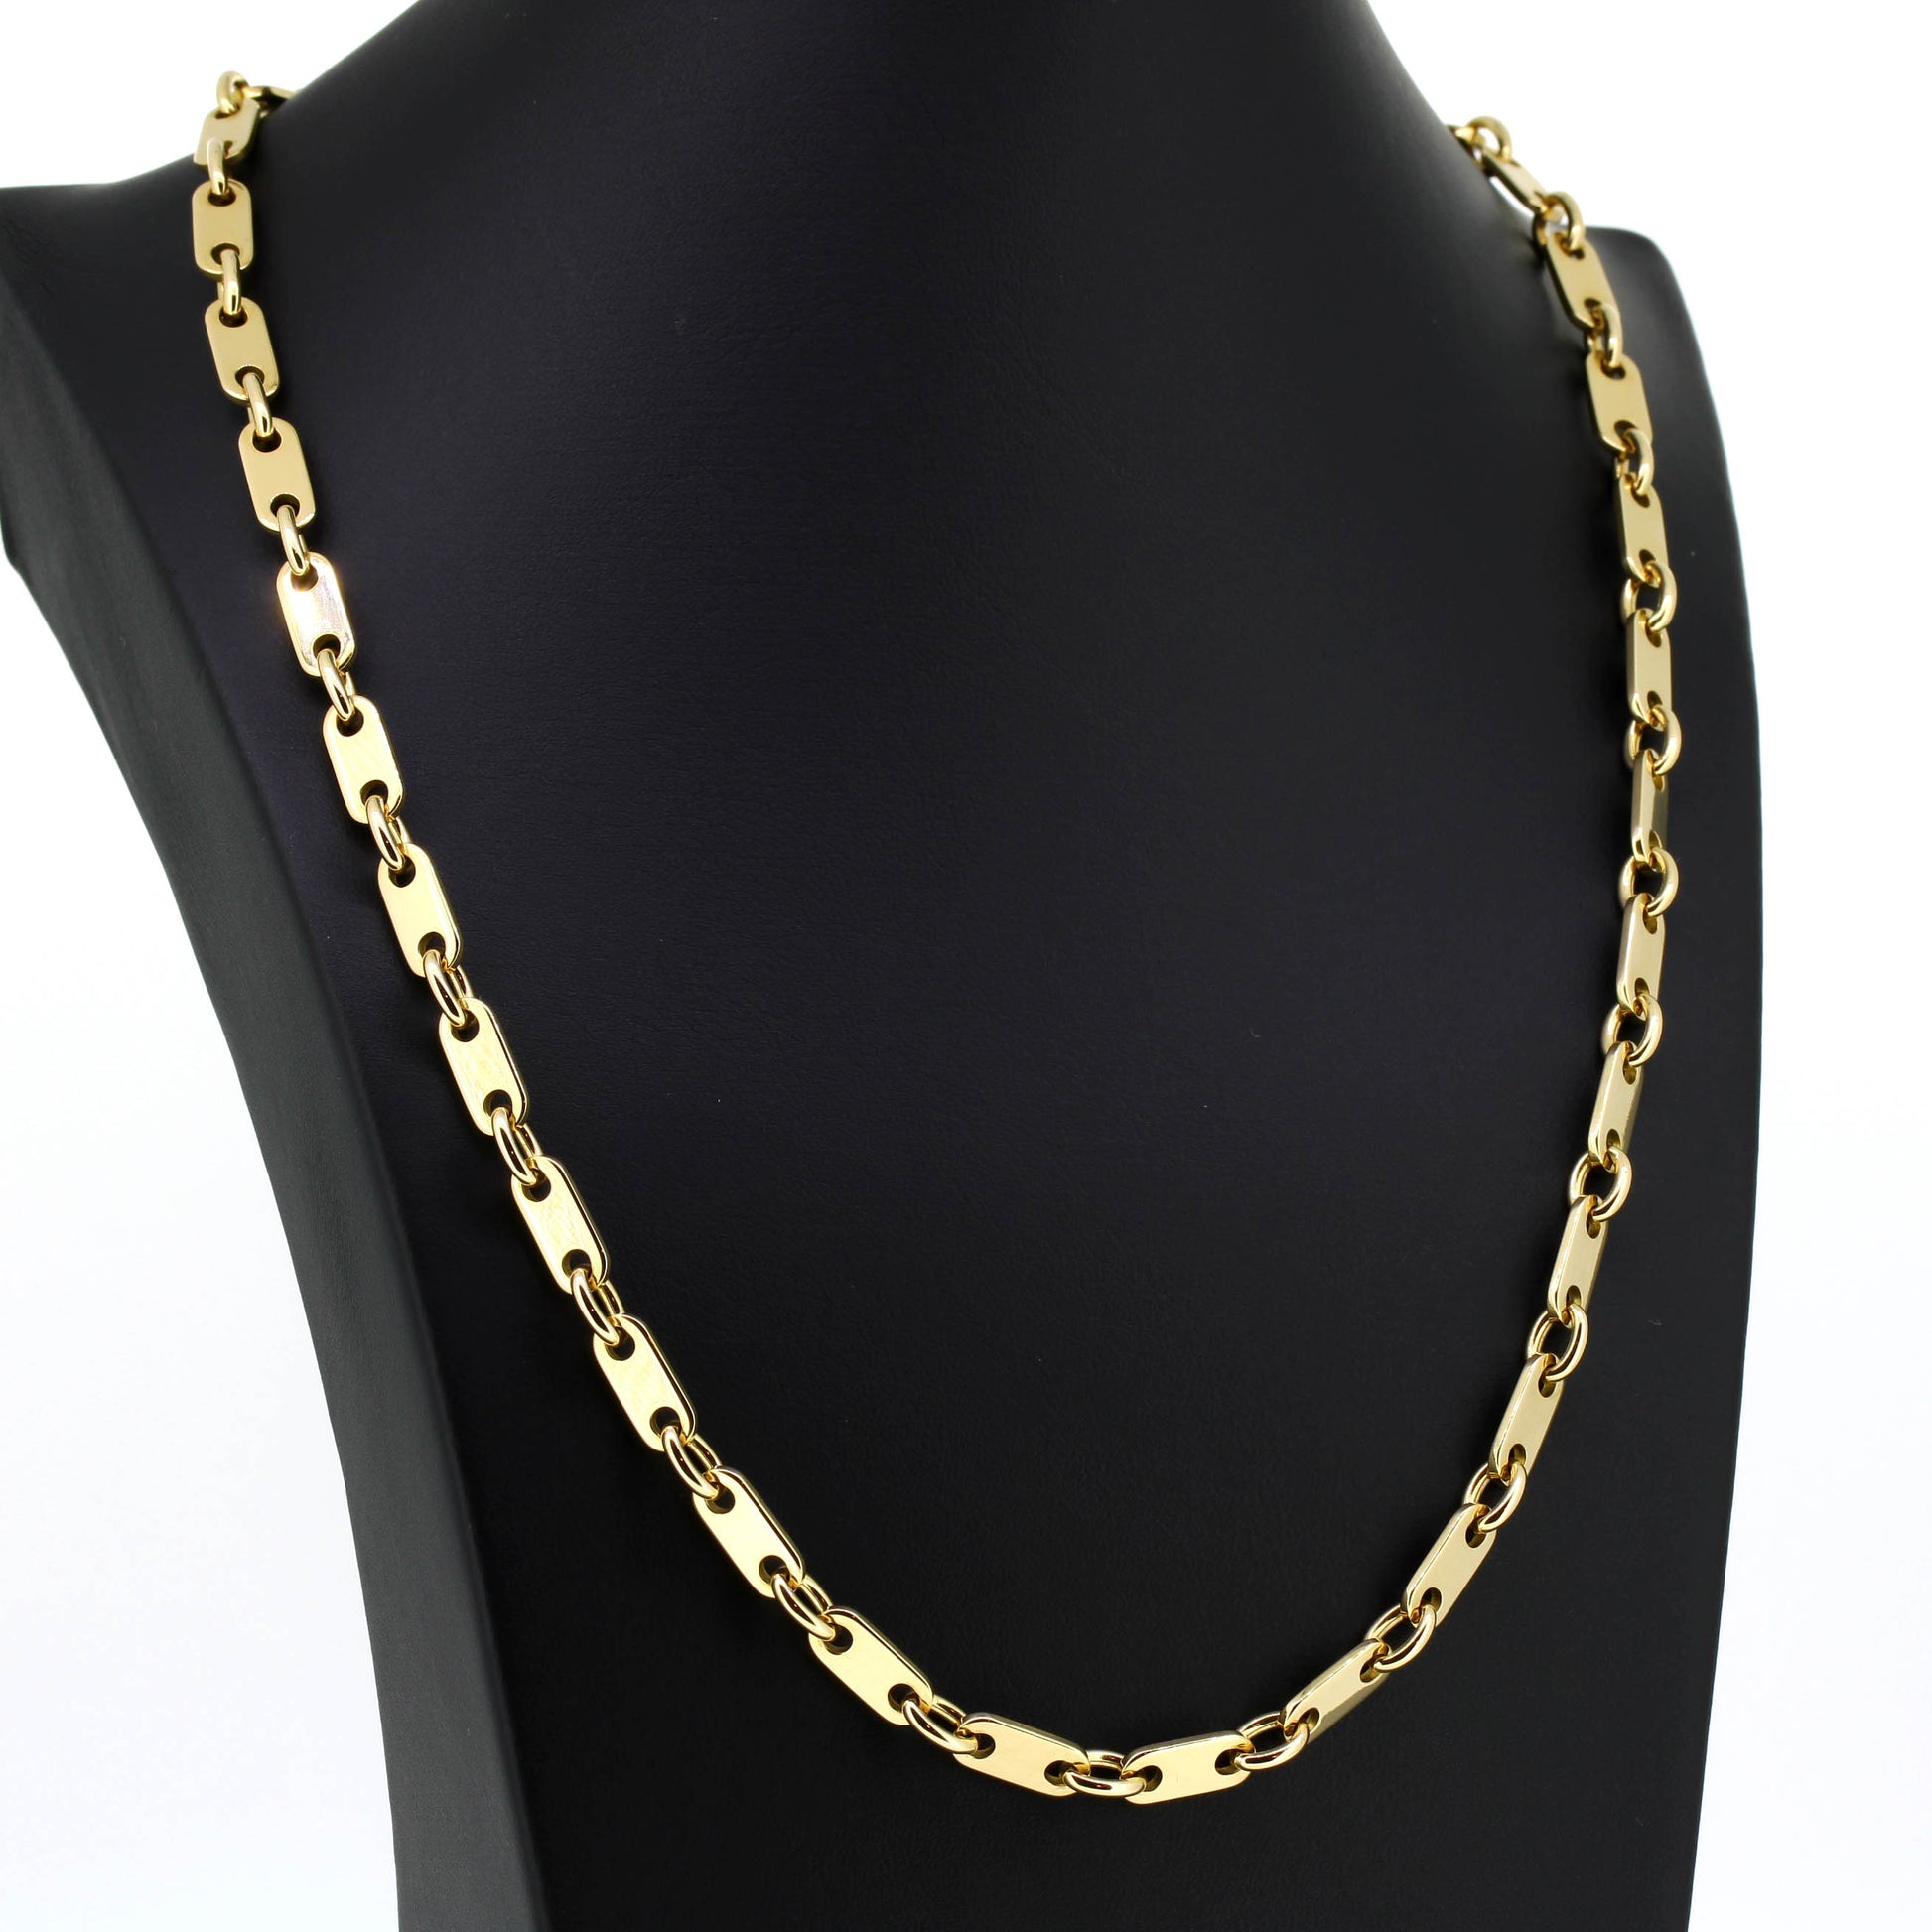 Platten Halskette 750 Gold 18 Kt Gelbgold - Kettenlänge 54 cm